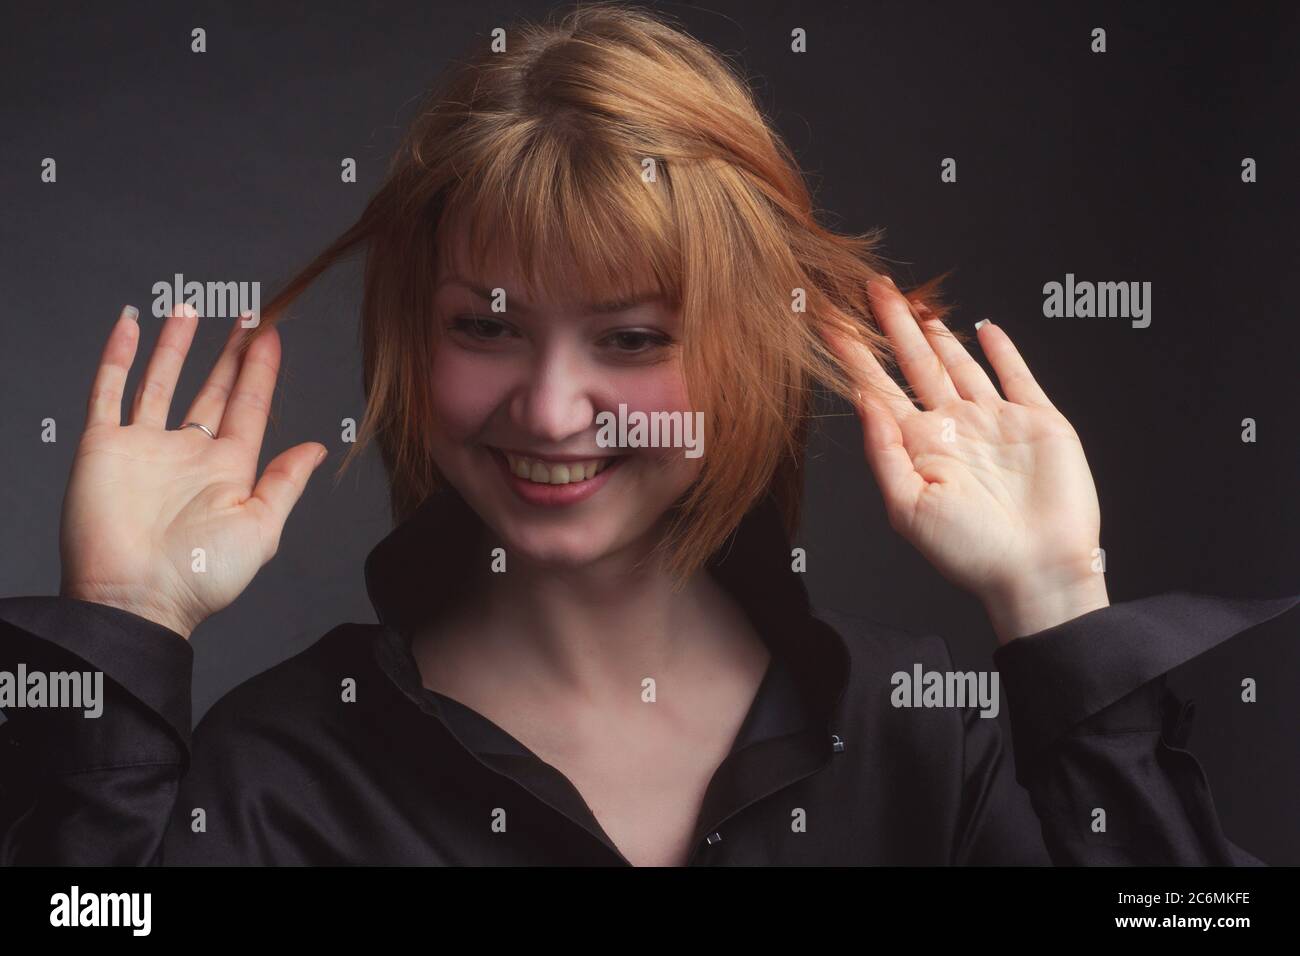 Studio-Portrait einer jungen lustigen Frau mit kurzen Haaren in einer schwarzen Bluse, lachend, zerzaust Stockfoto